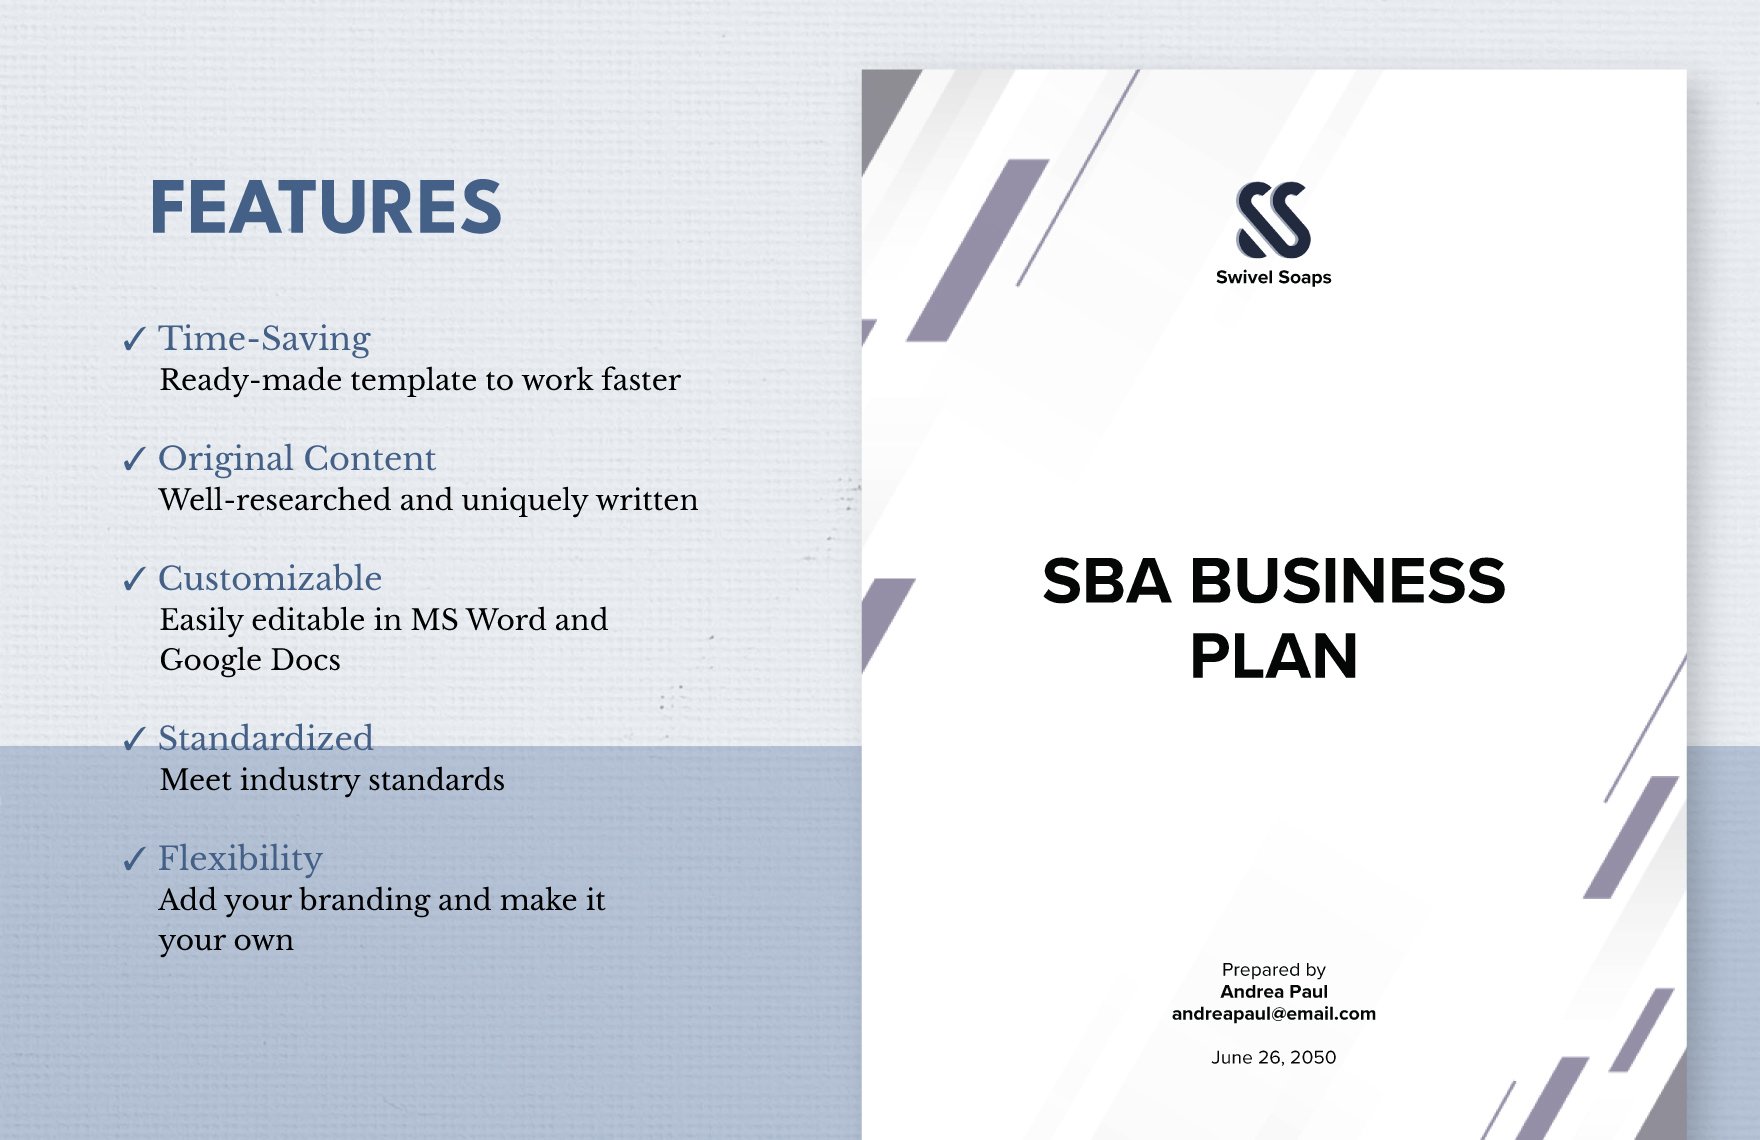 SBA Business Plan Template